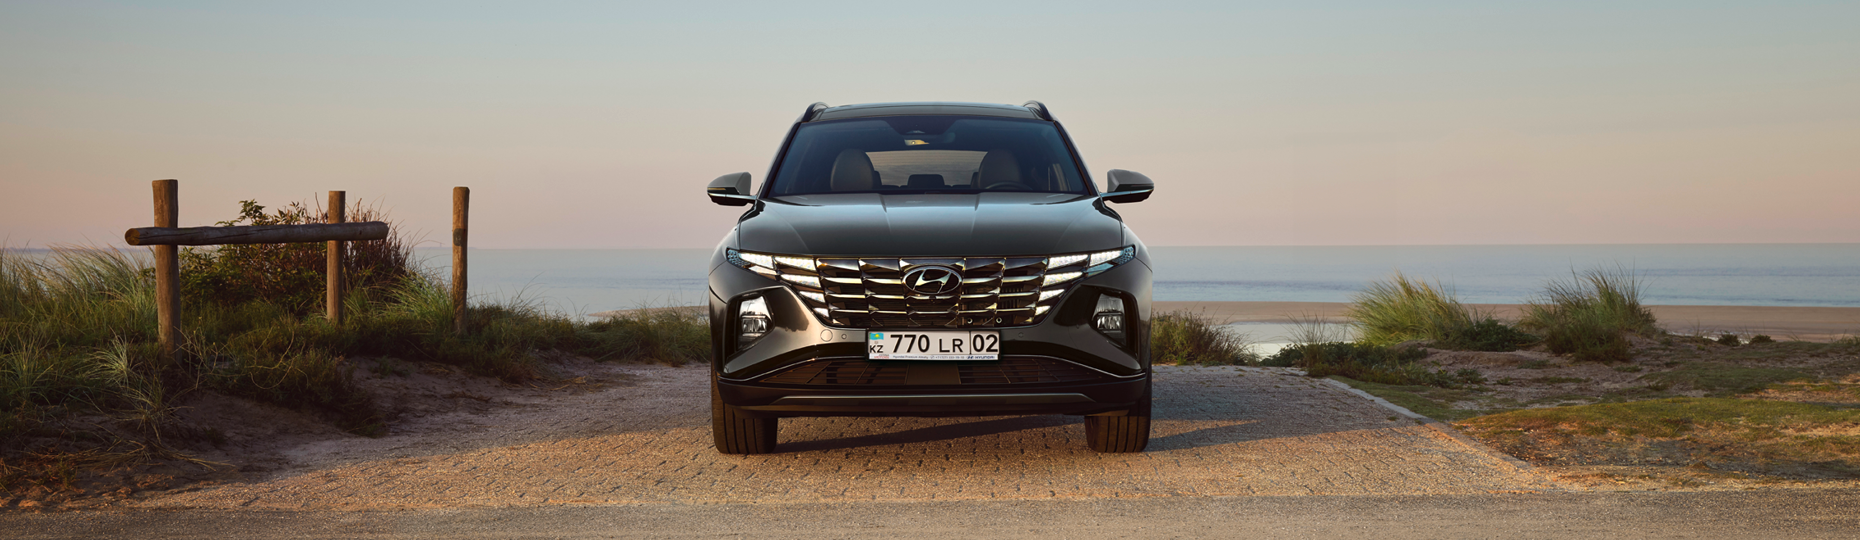 Жаңа Hyundai Tucson жайлылығы | Астана қаласындағы ресми дилер